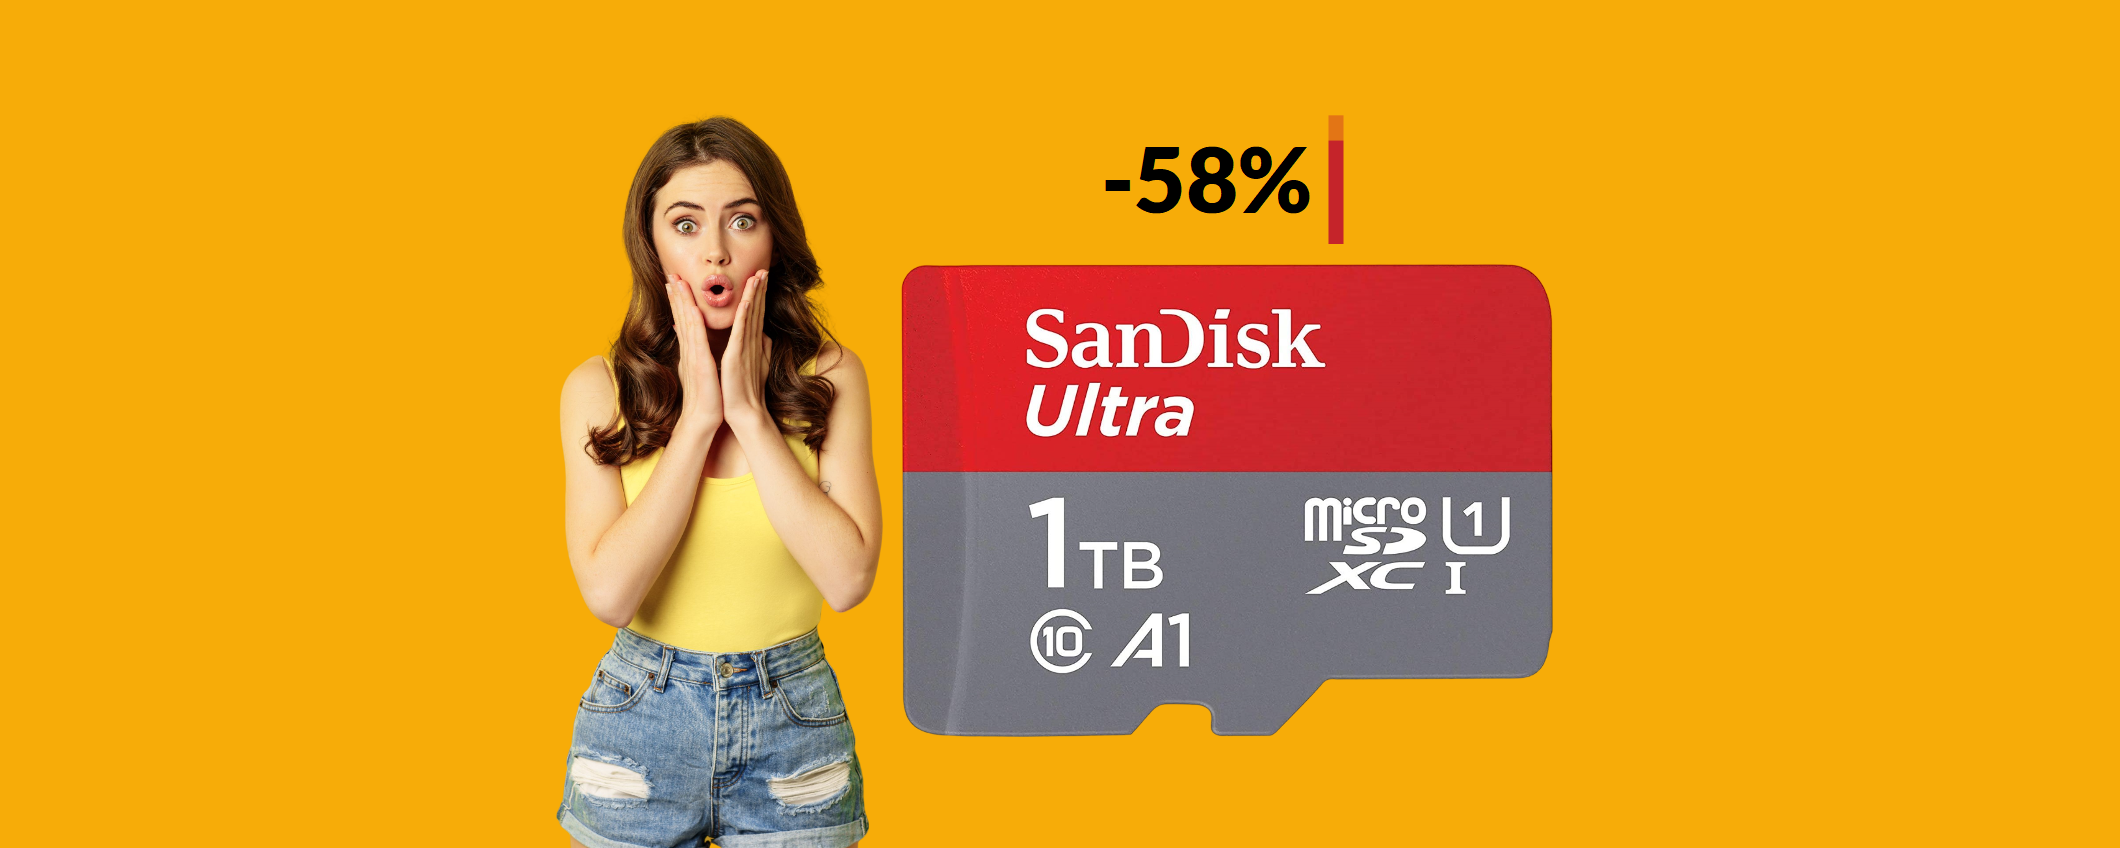 MicroSD SanDisk 1TB a meno di METÀ PREZZO: poche unità